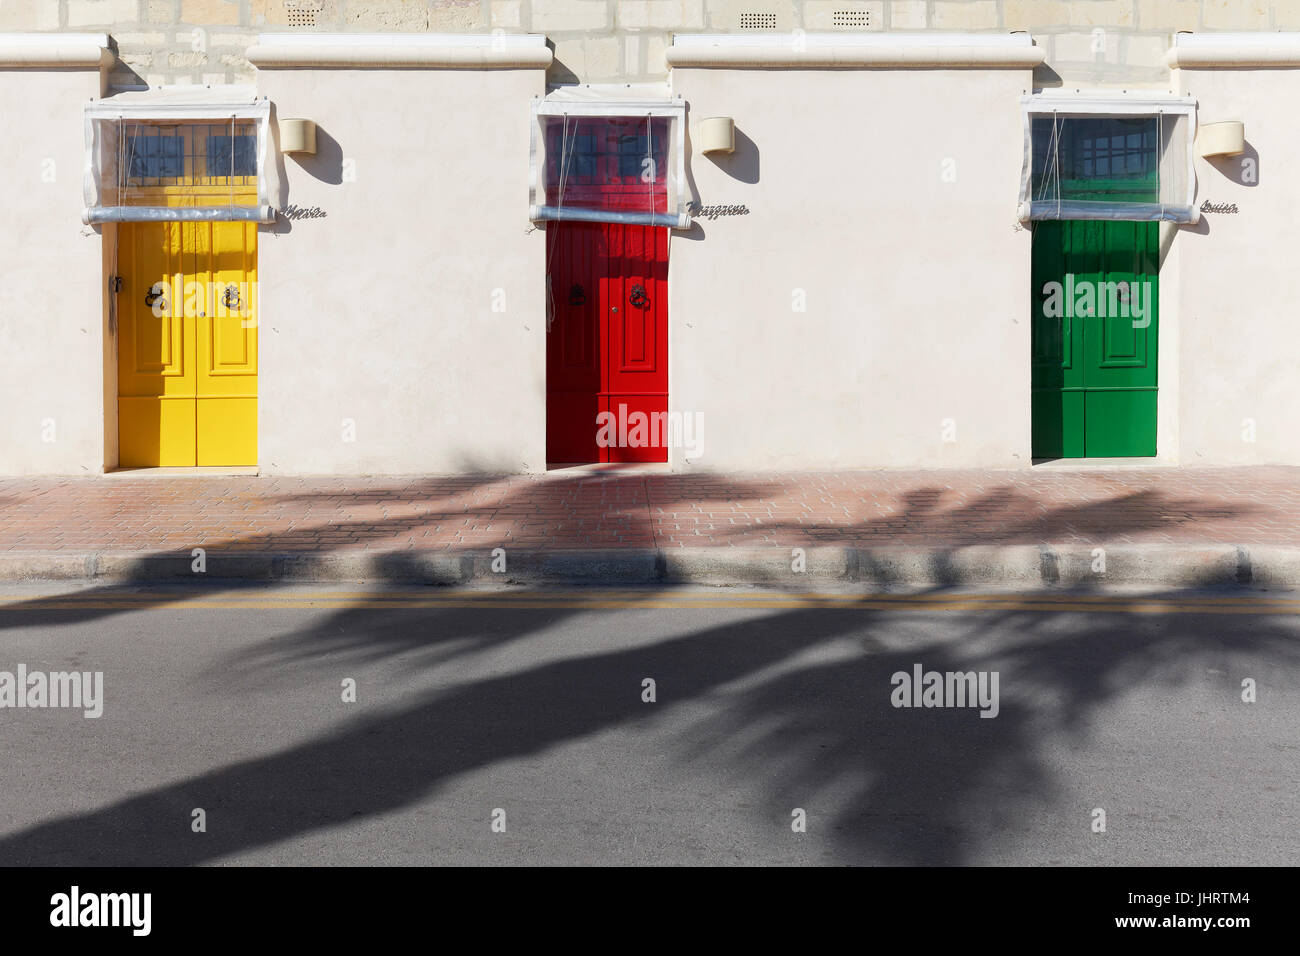 Façade de maison avec portes colorées en différentes couleurs, Marsaxlokk, Malte Banque D'Images